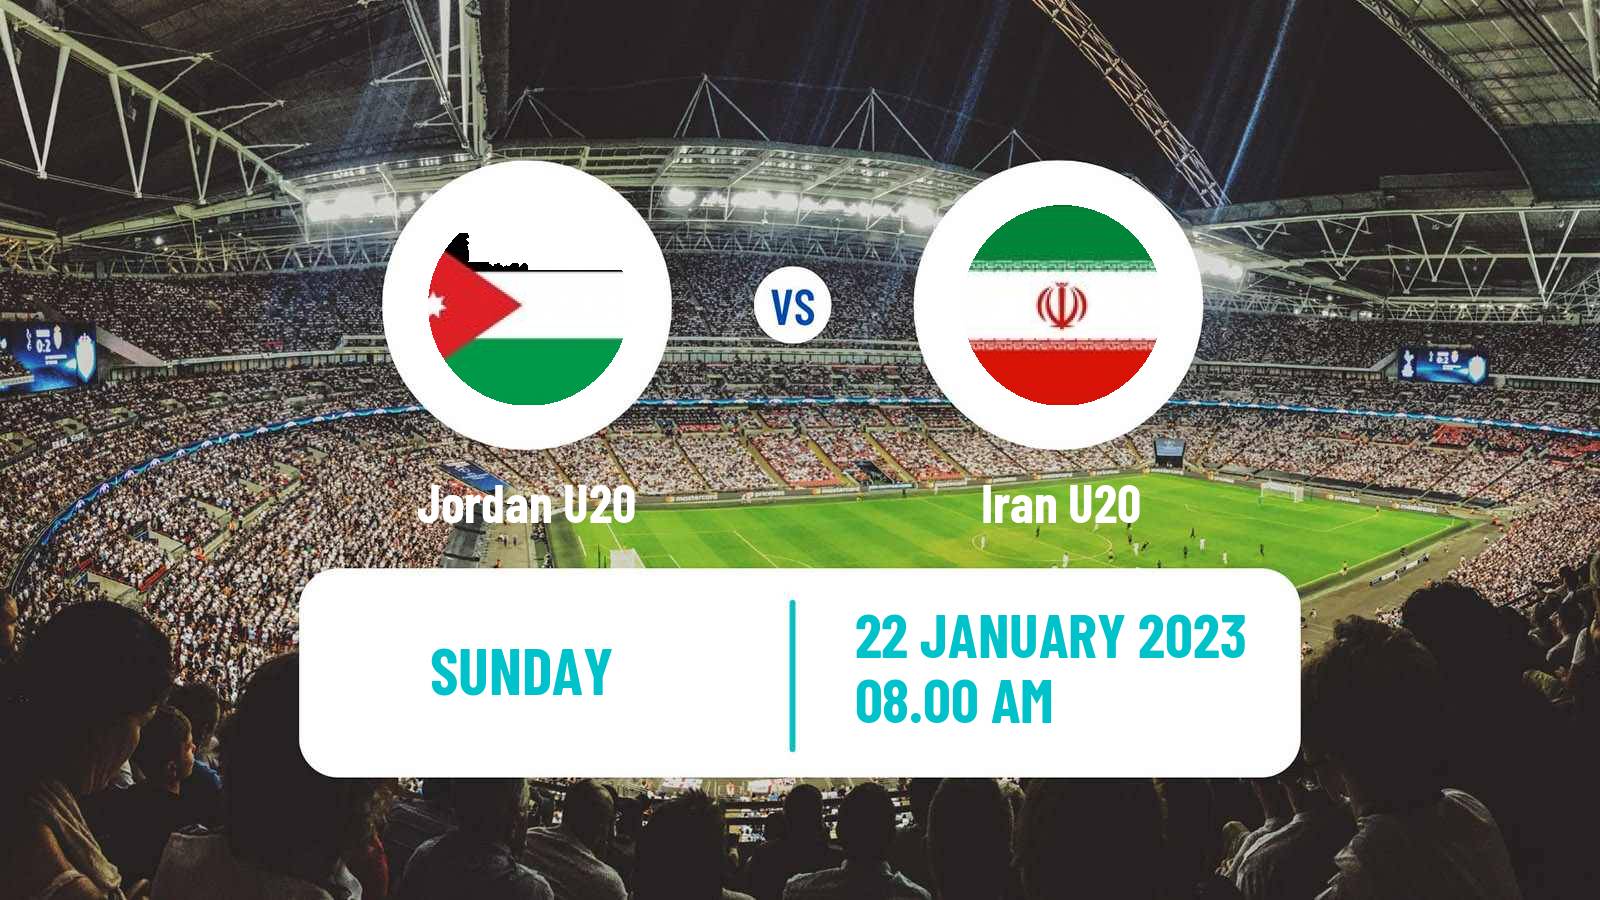 Soccer Friendly Jordan U20 - Iran U20